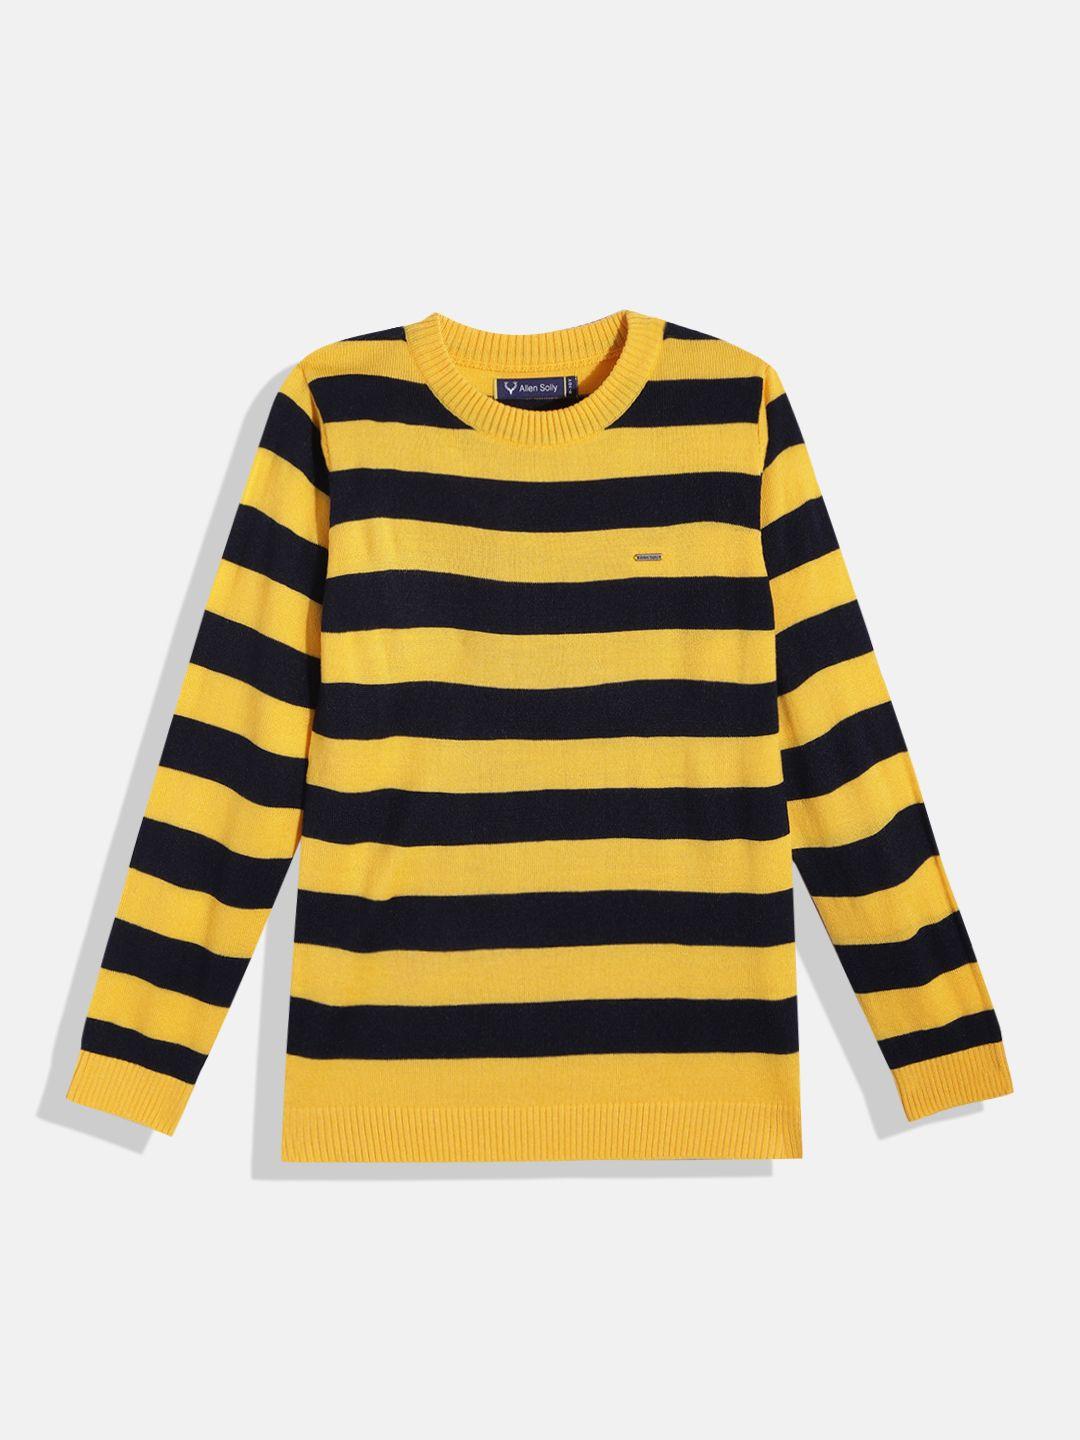 Allen Solly Junior Boys Mustard Yellow & Navy Blue Striped Pullover